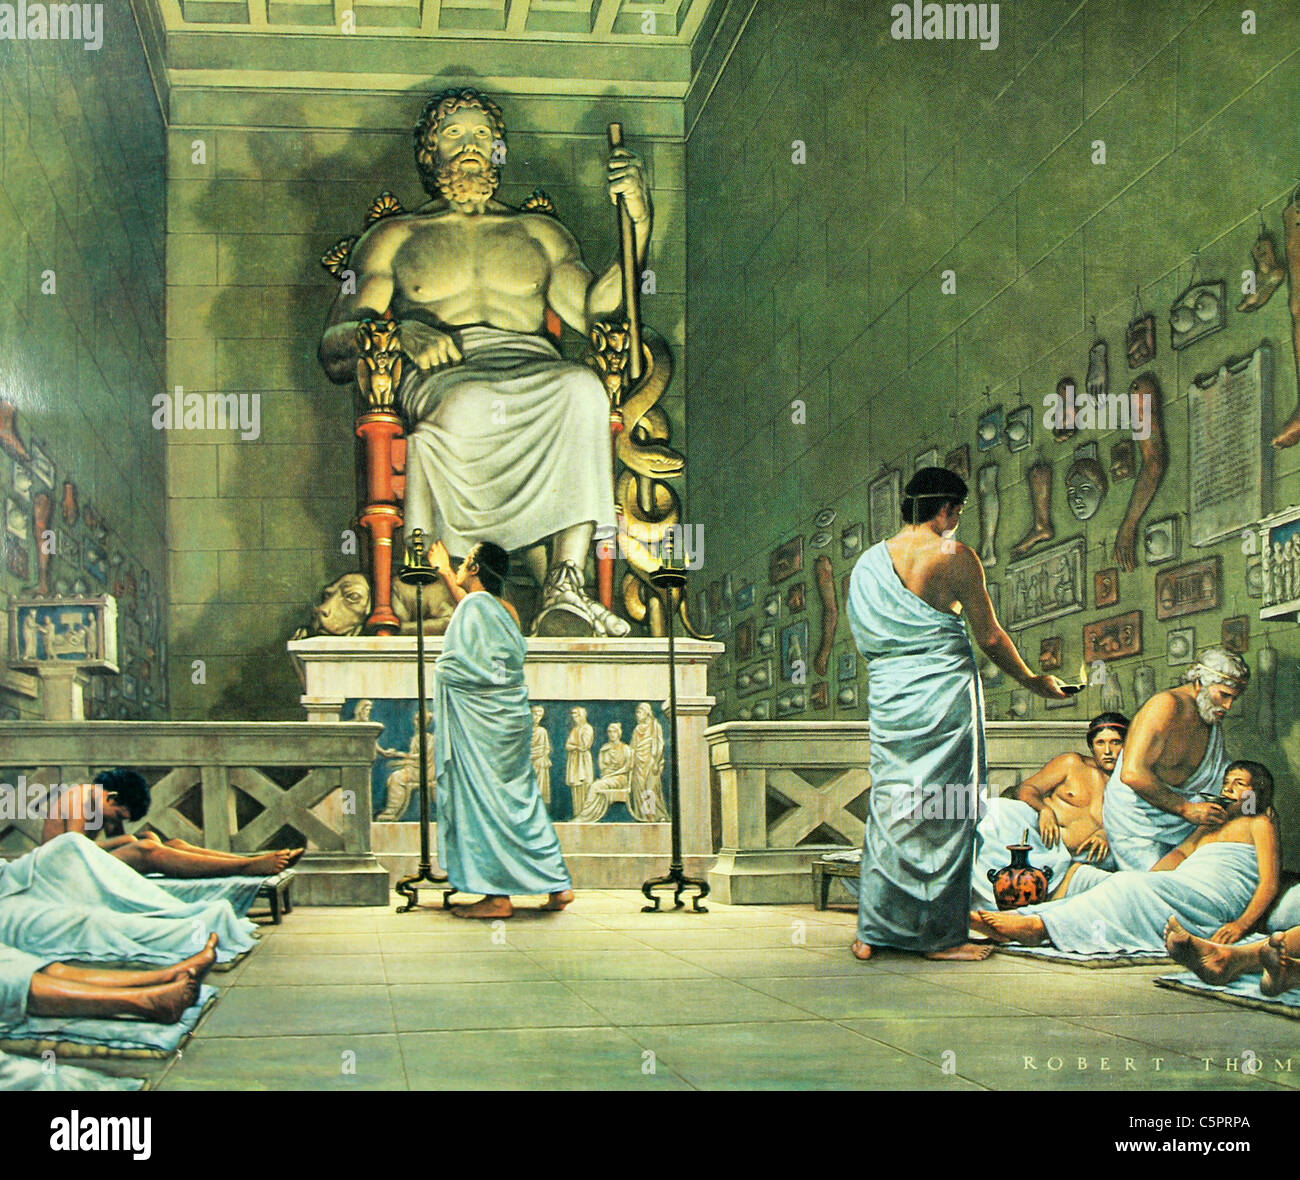 Pour une période de 1 000 ans, les pèlerins malades affluaient les temples grecs d'Asclépios. La guérison est venu par le biais de visites de rêve par le dieu. Banque D'Images